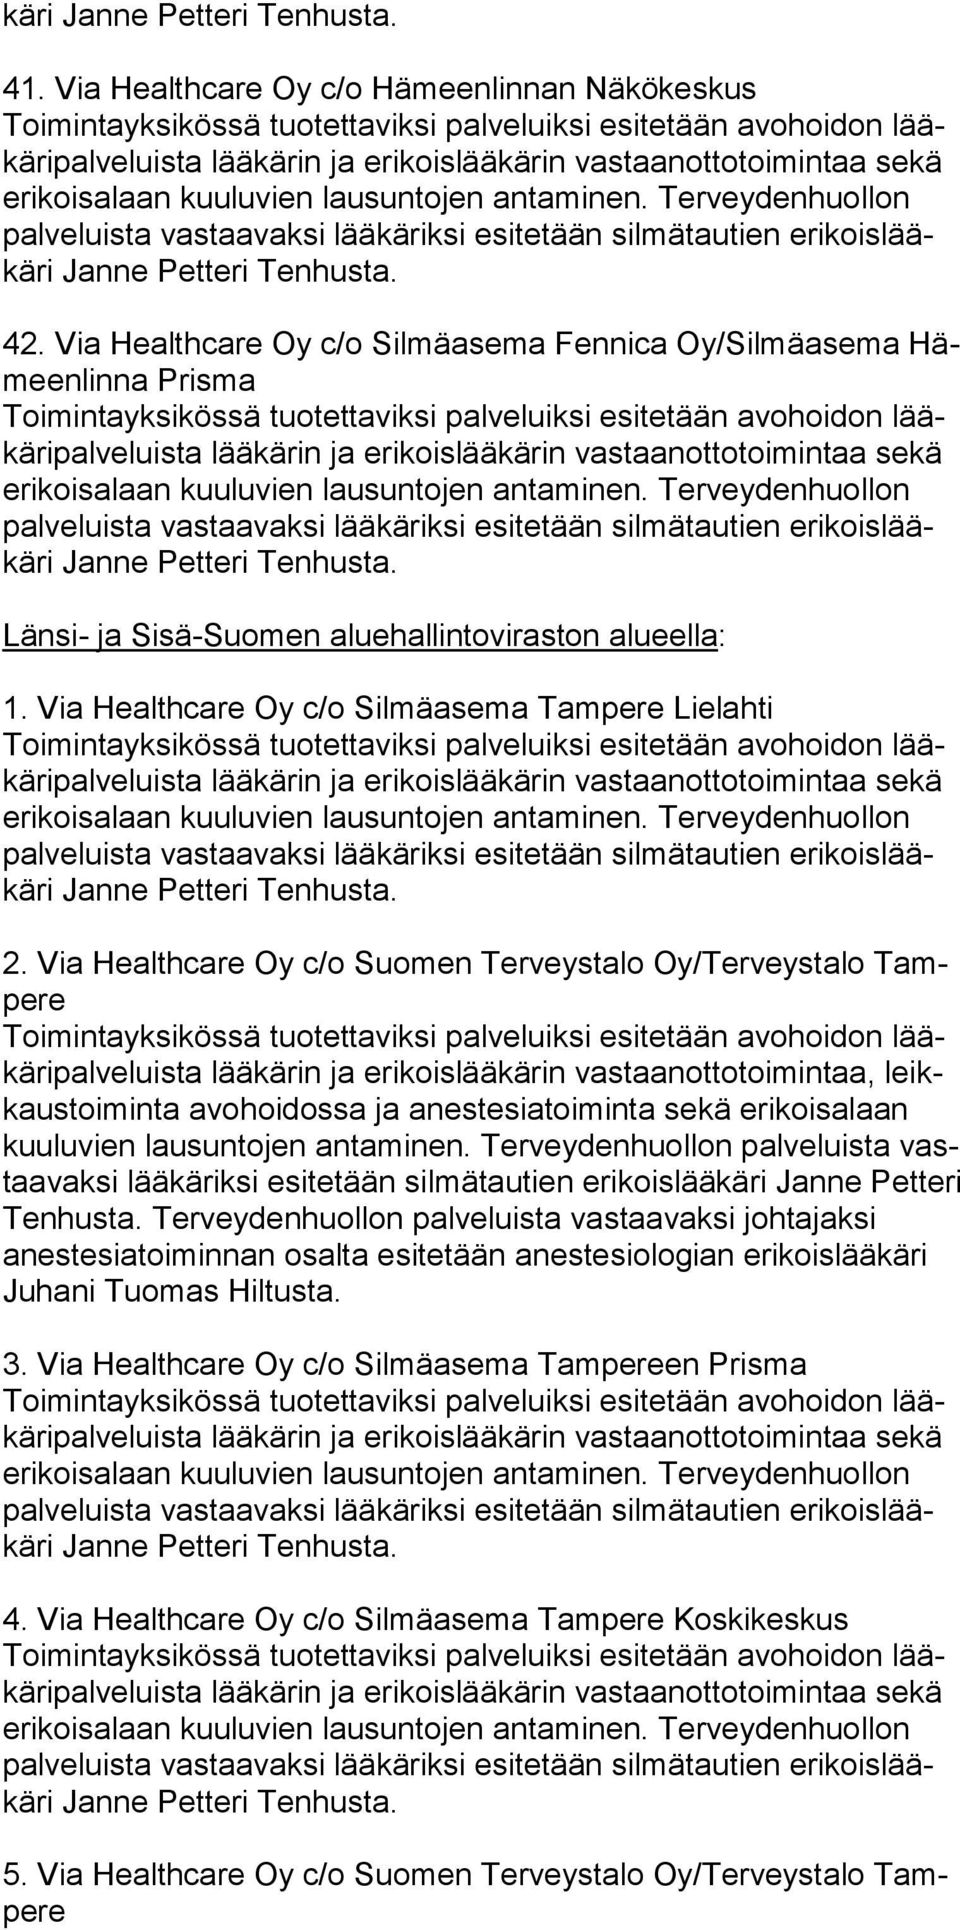 Via Healthcare Oy c/o Suomen Terveystalo Oy/Terveystalo Tampere ripalveluista lää kärin ja erikoislääkärin vastaanottotoimintaa, leikkaustoiminta avo hoidossa ja anestesiatoiminta sekä erikoisalaan